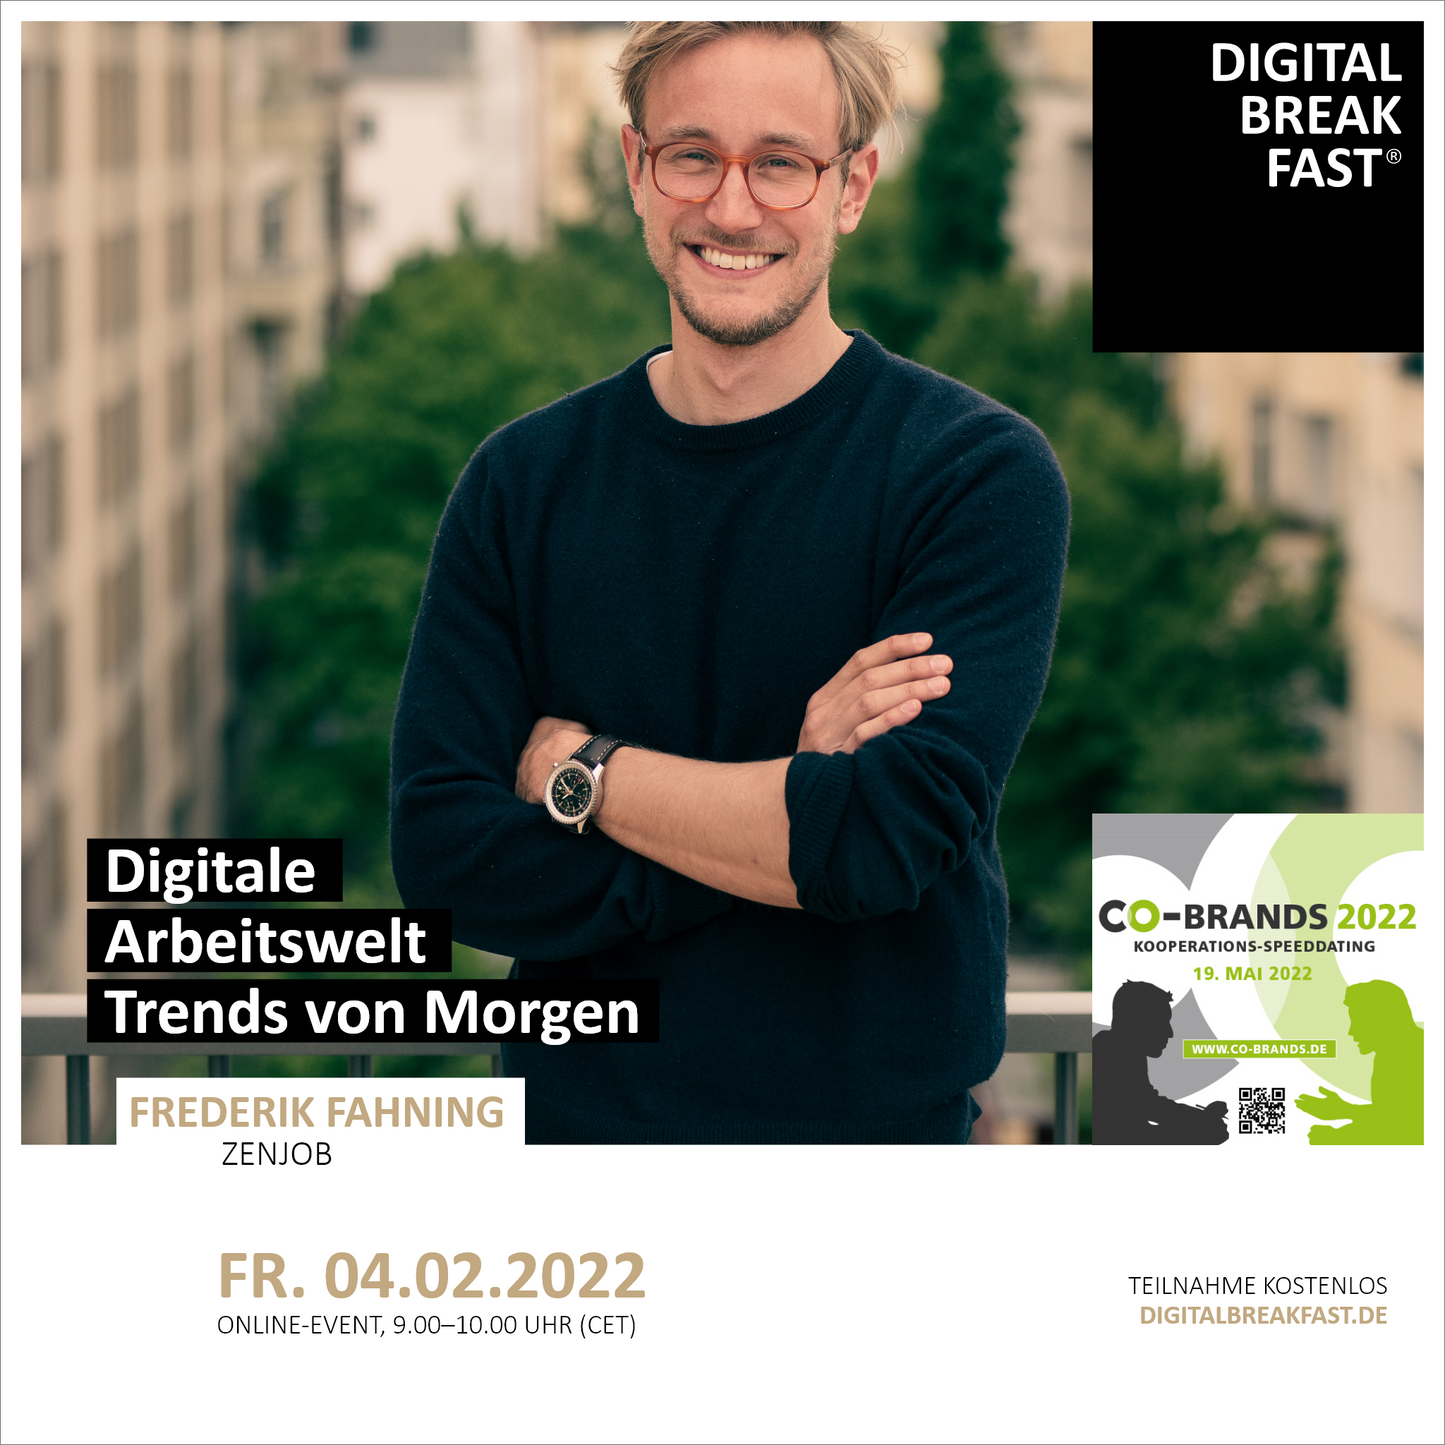 04.02.2022 | "Digitale Arbeitswelt: Trends von Morgen" mit Frederik Fahning | Zenjob